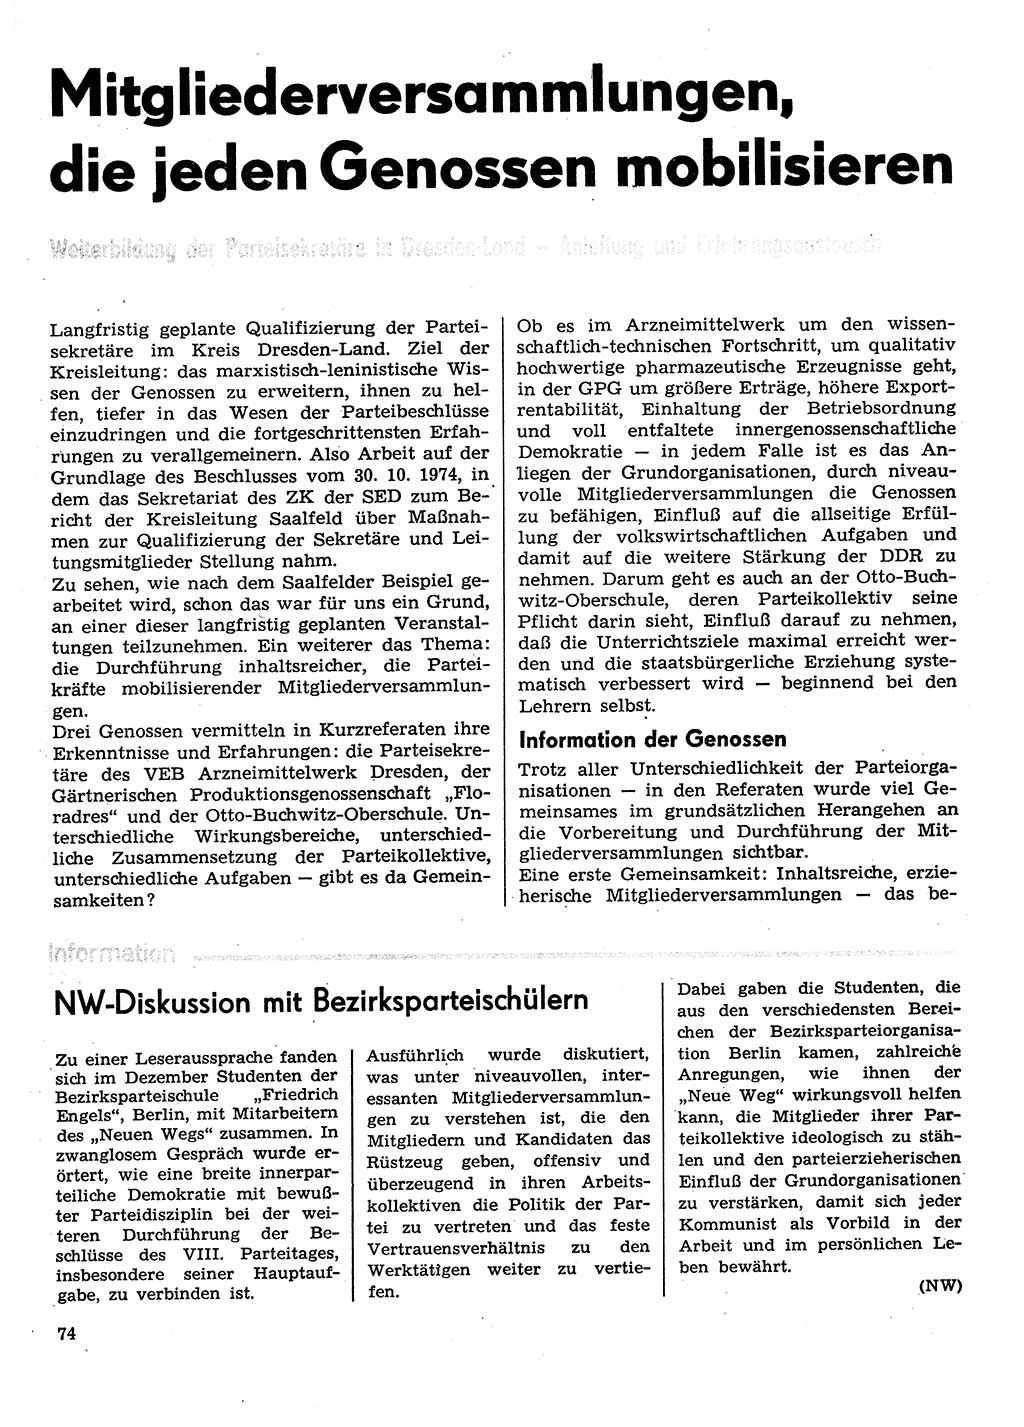 Neuer Weg (NW), Organ des Zentralkomitees (ZK) der SED (Sozialistische Einheitspartei Deutschlands) für Fragen des Parteilebens, 30. Jahrgang [Deutsche Demokratische Republik (DDR)] 1975, Seite 74 (NW ZK SED DDR 1975, S. 74)